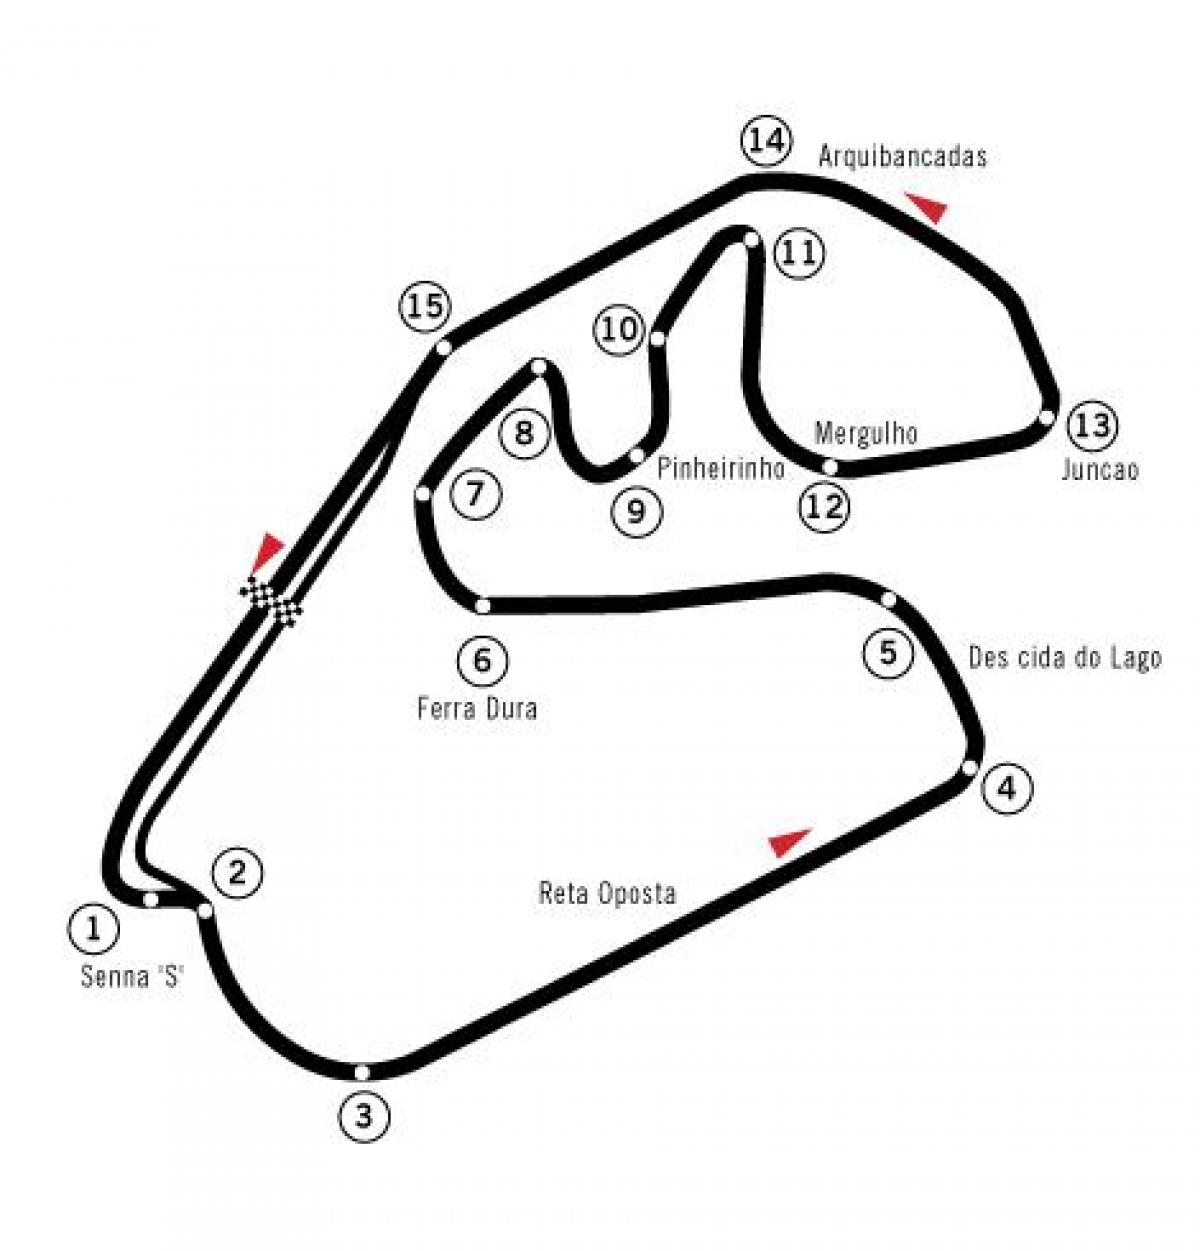 Kaart van het racecircuit autódromo José Carlos Pace